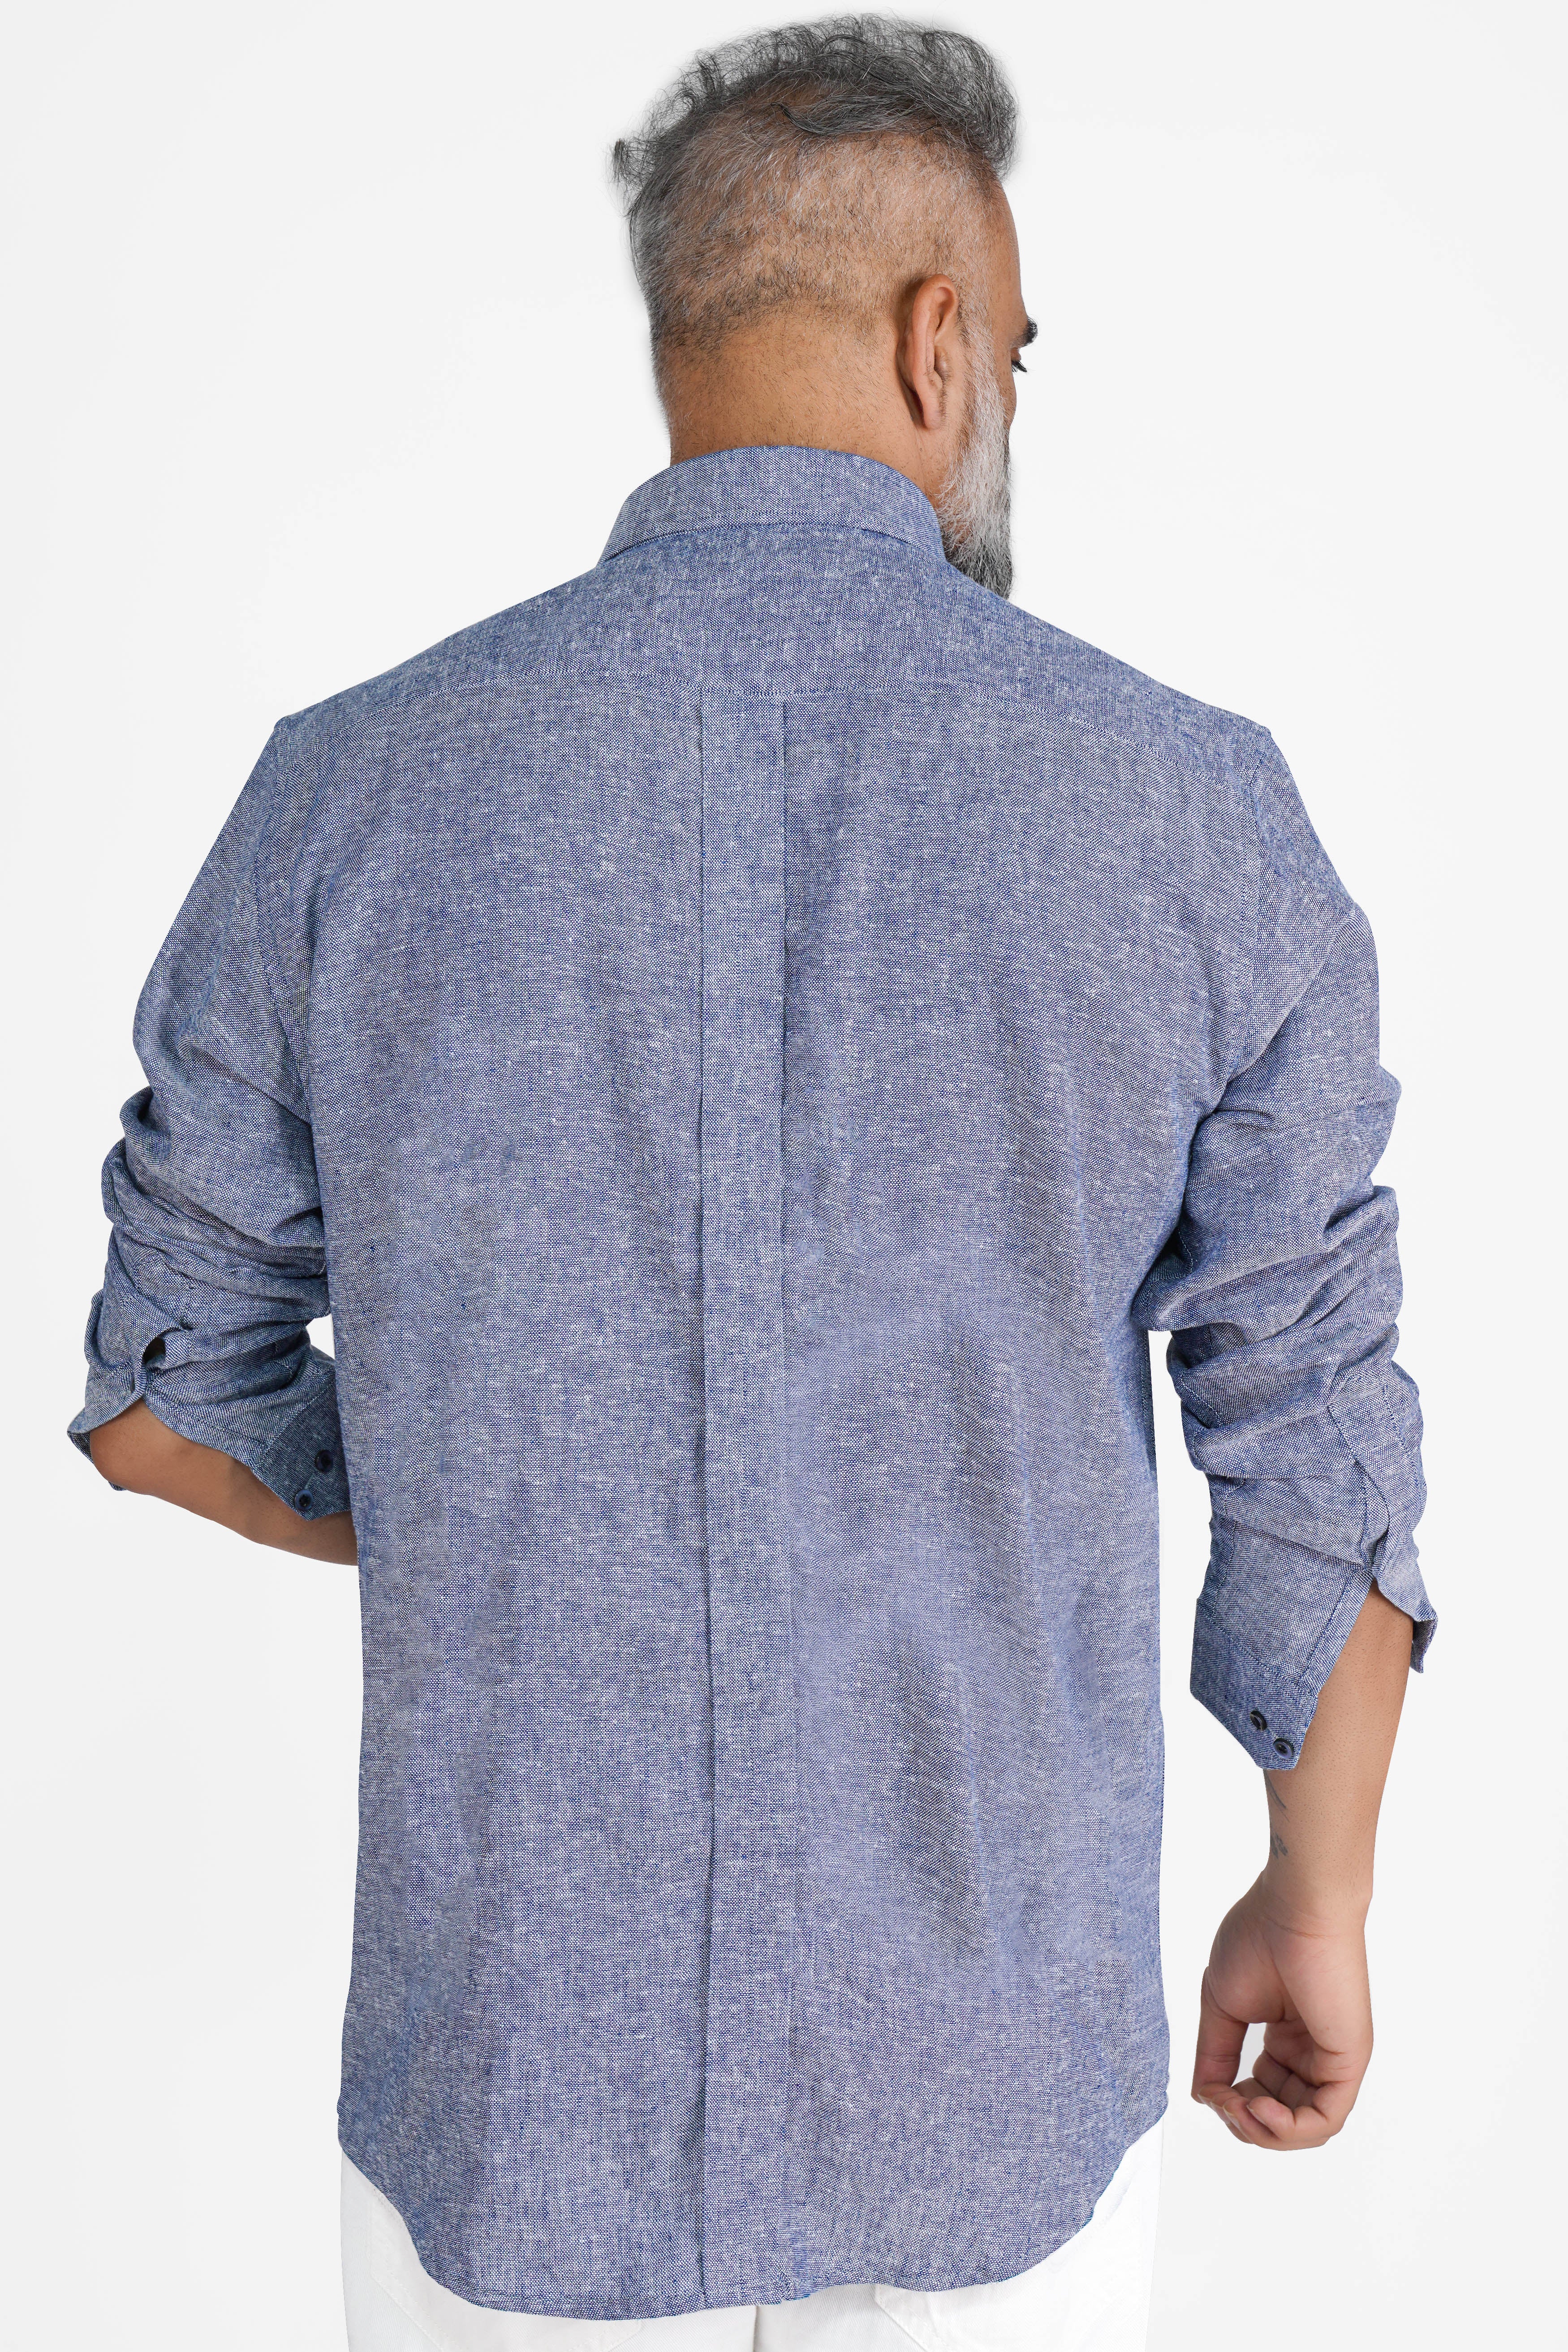 Kimberly Blue Luxurious Linen Button Down Designer Shirt